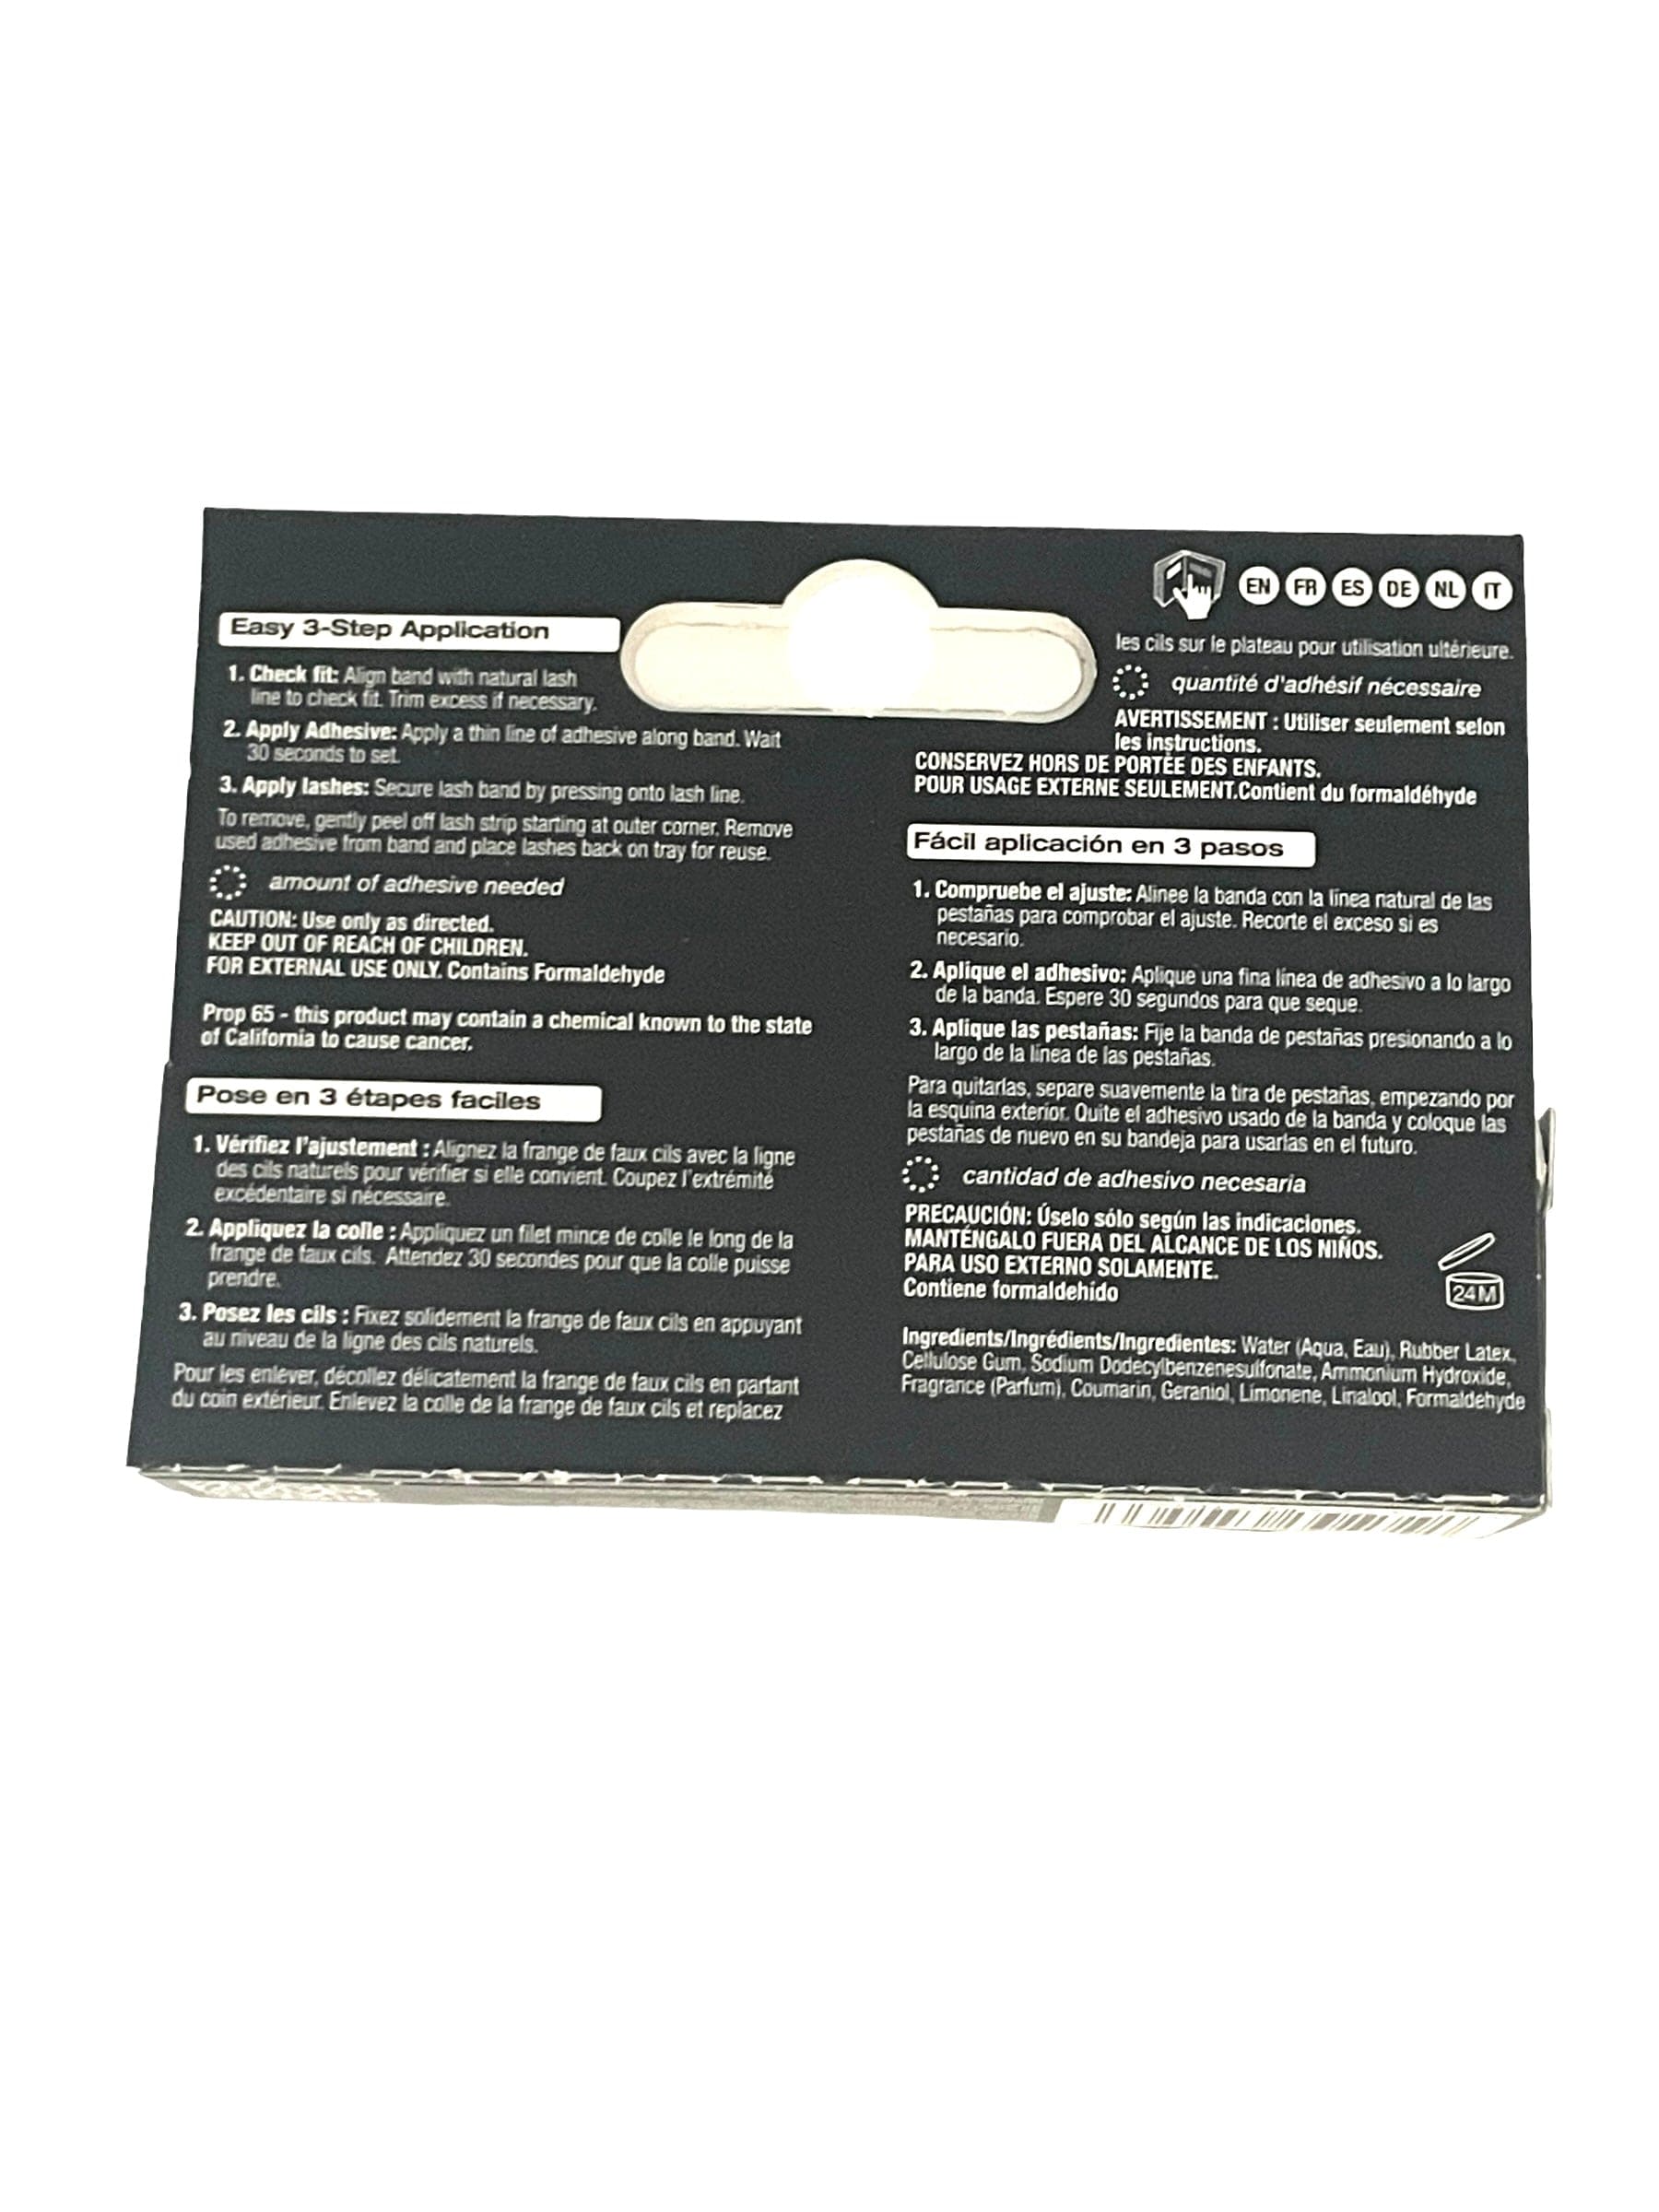 Ardell LashGrip Clear Adhesive 0.25oz False Eyelash Adhesive